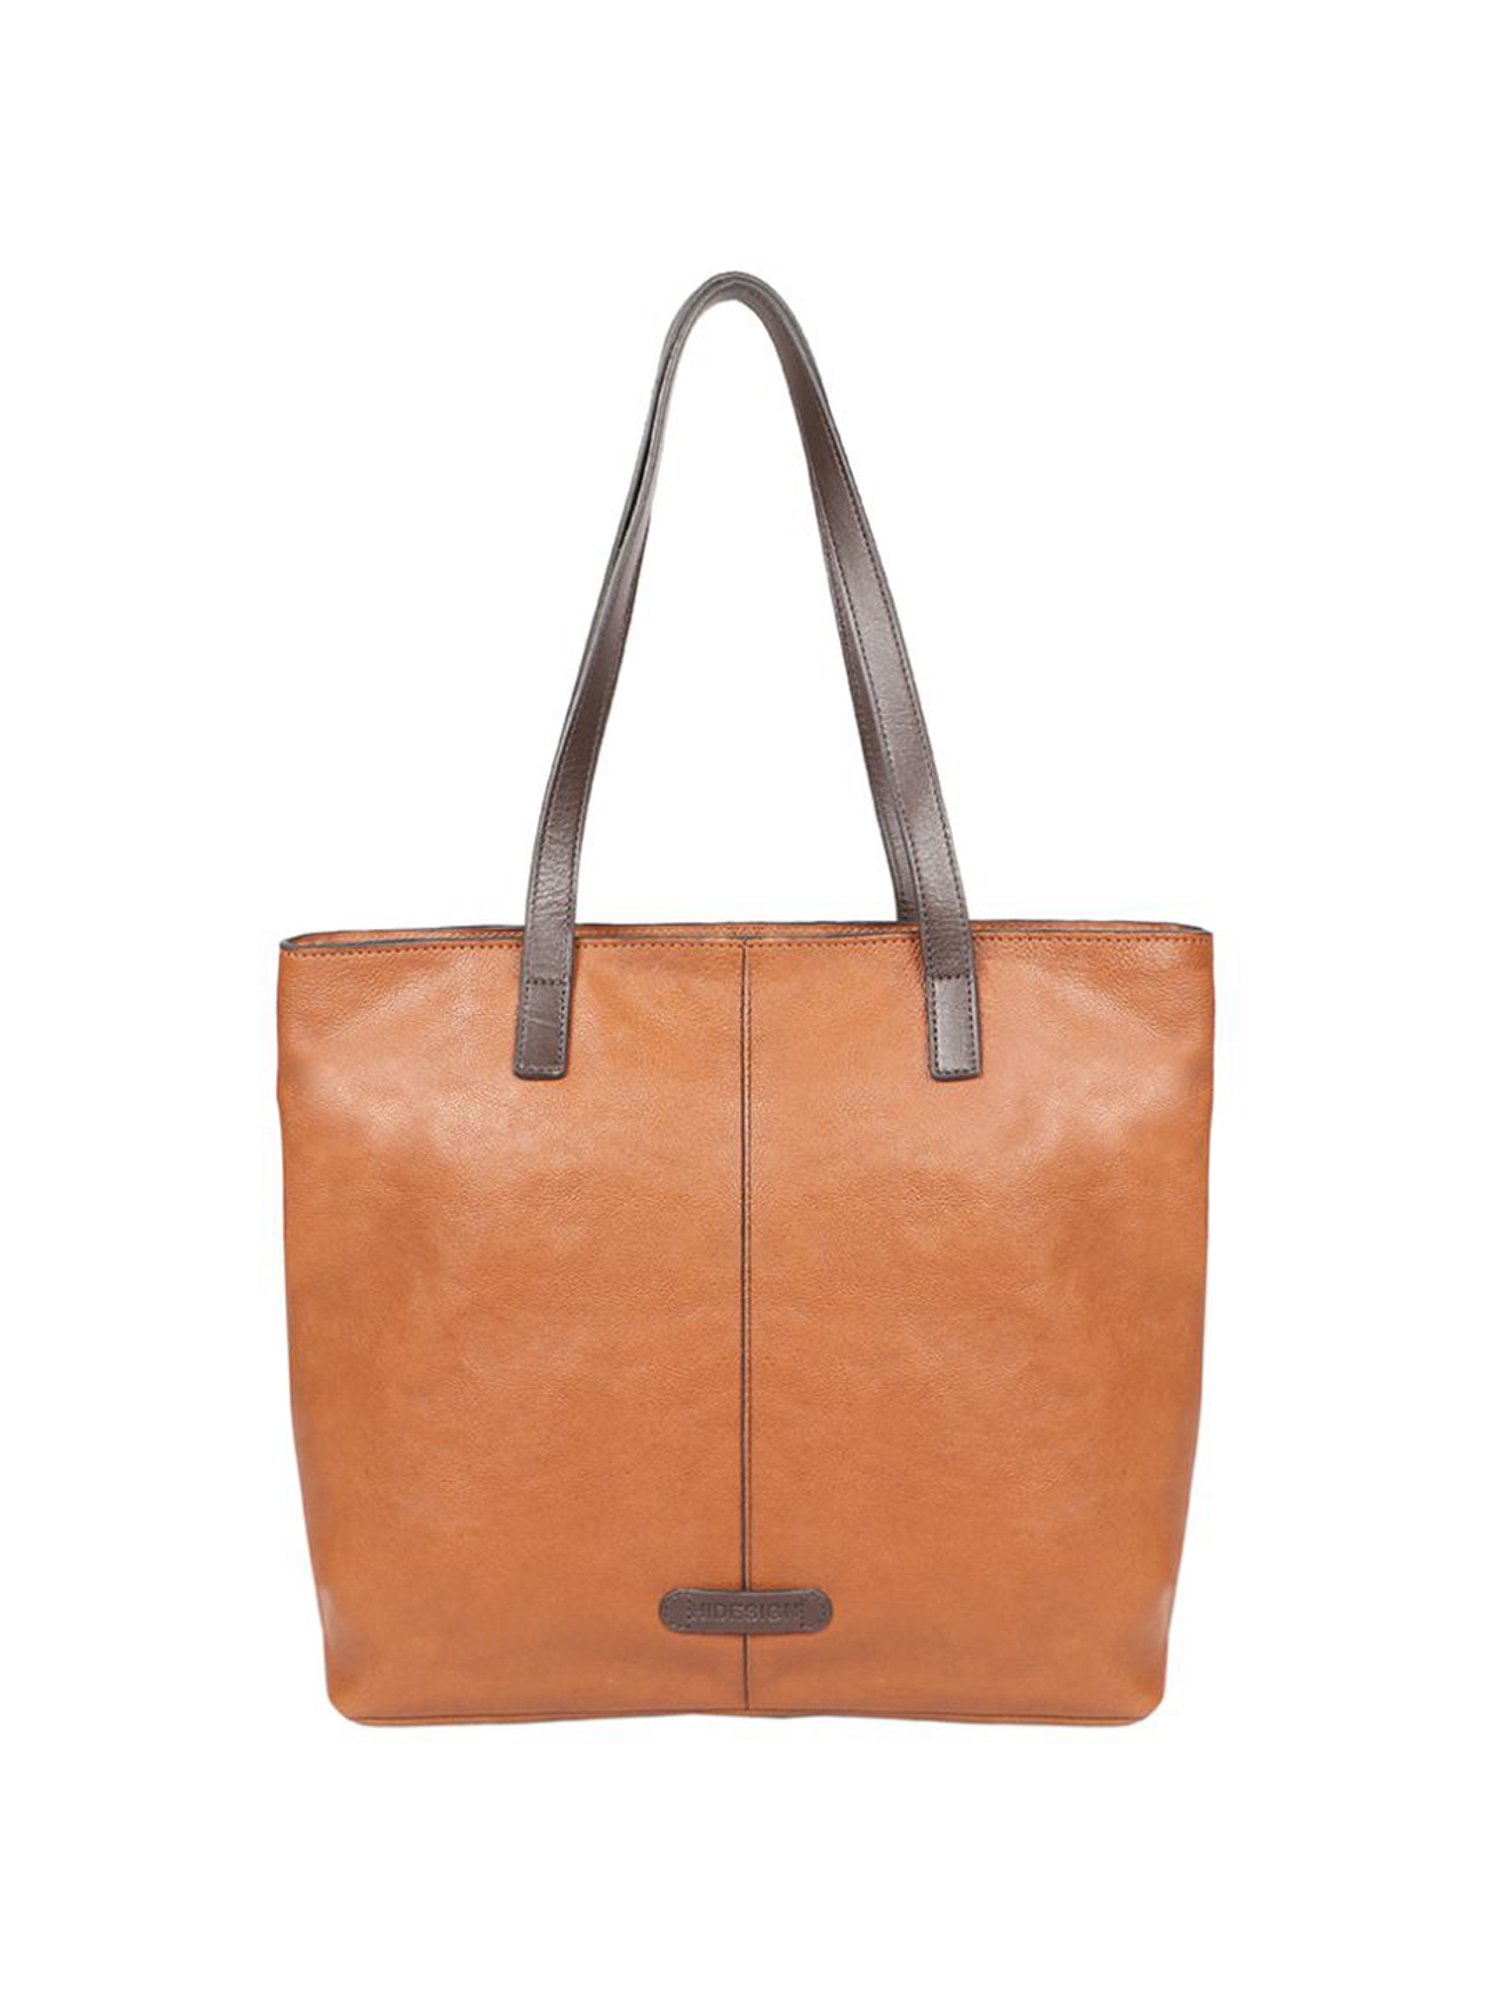 Buy Tan Summer 01 Tote Bag Online - Hidesign